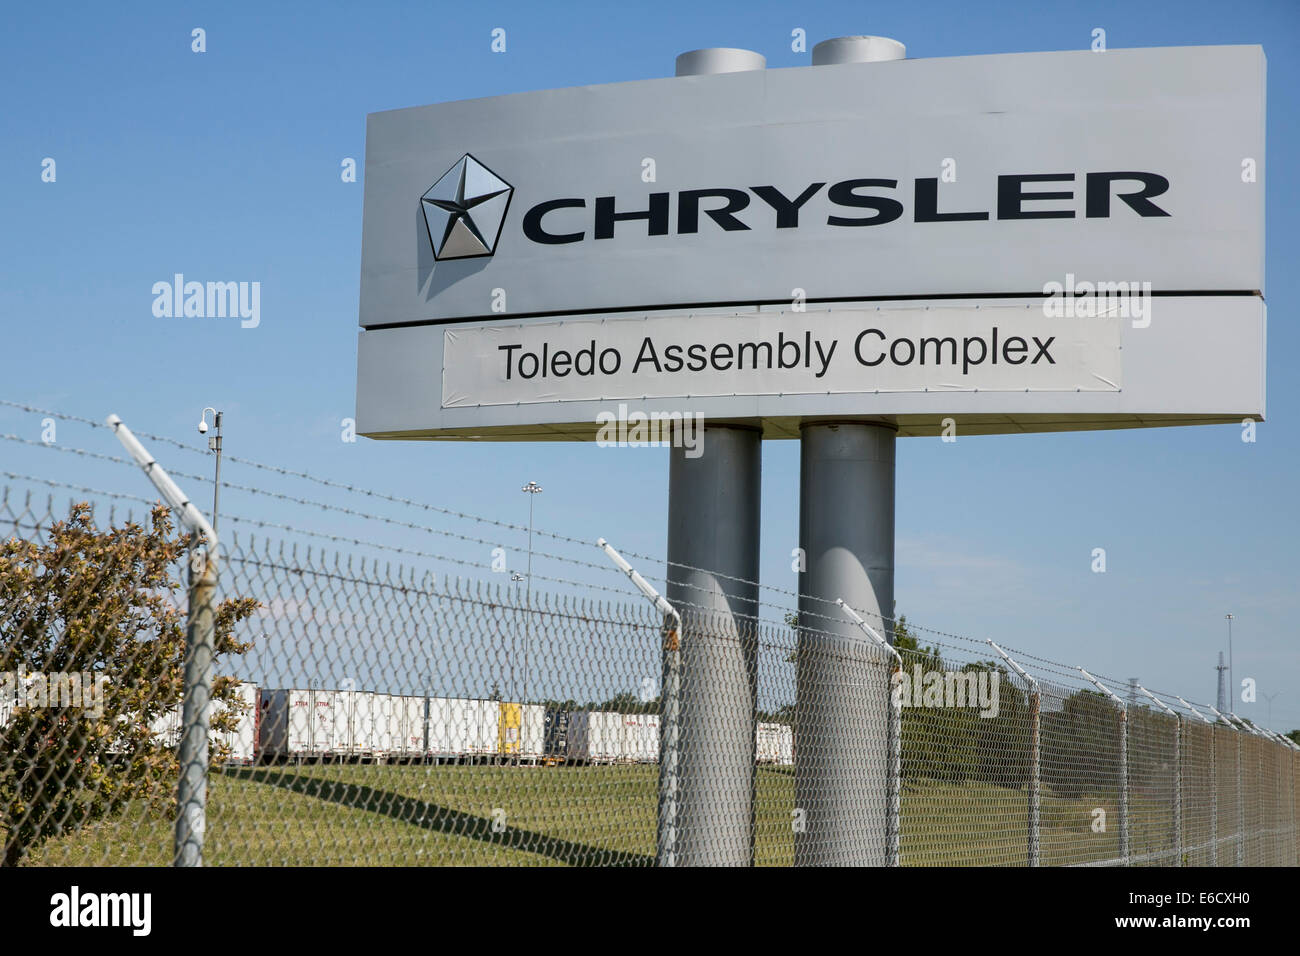 Le Complexe de montage Chrysler Toledo à Toledo, Ohio. Le site de fabrication de véhicules Jeep. Banque D'Images